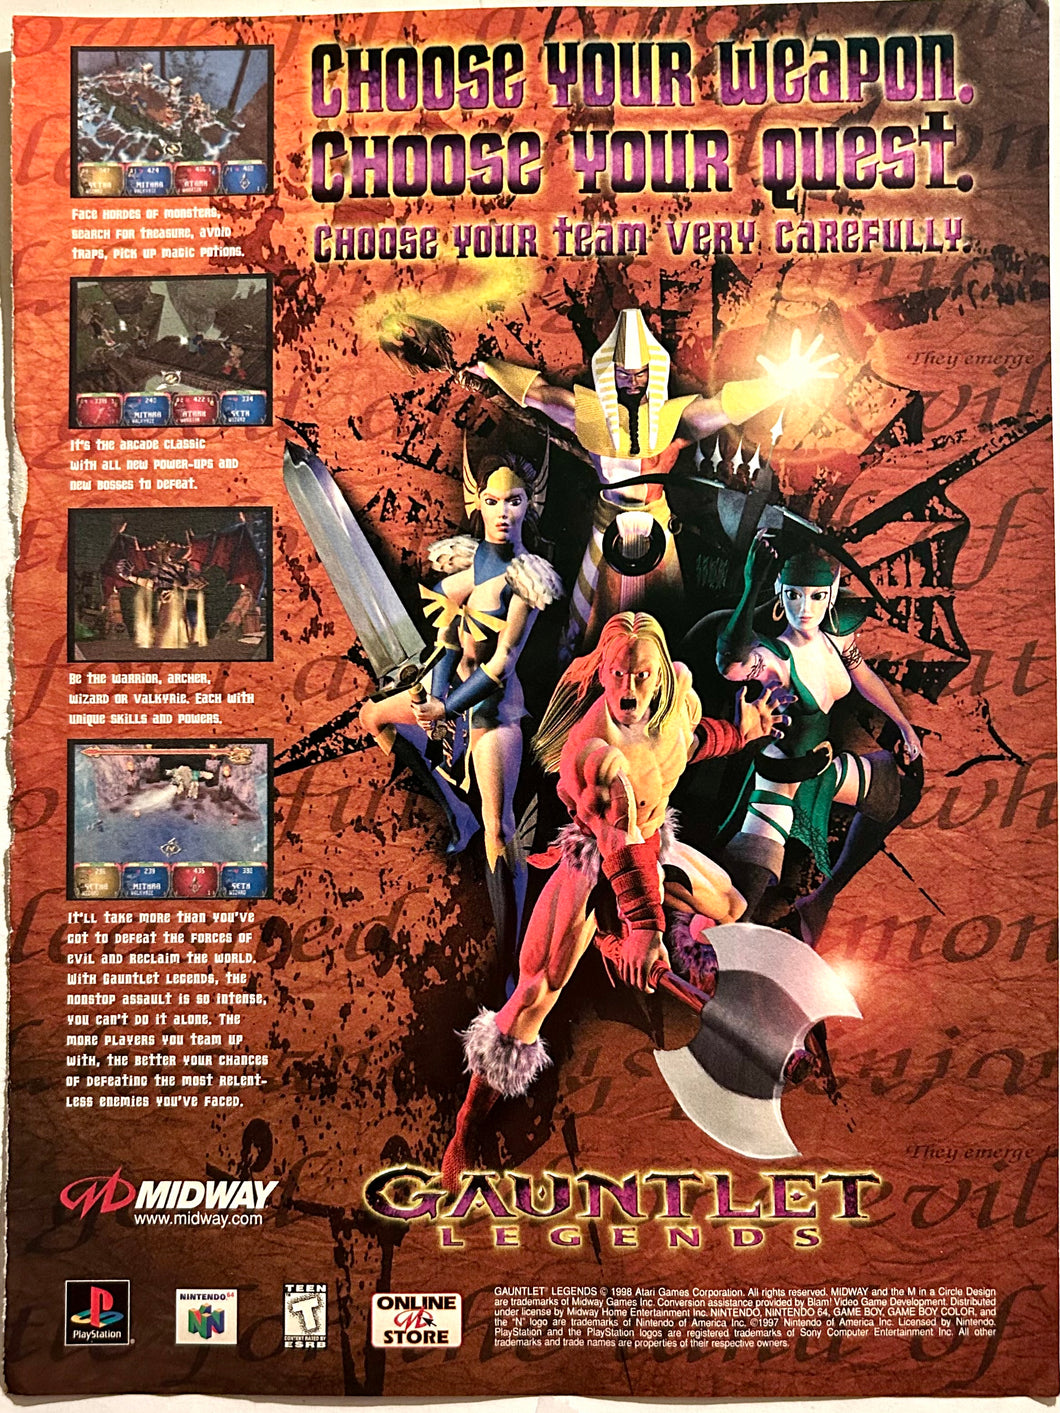 Gauntlet Legends - PlayStation N64 - Original Vintage Advertisement - Print Ads - Laminated A4 Poster